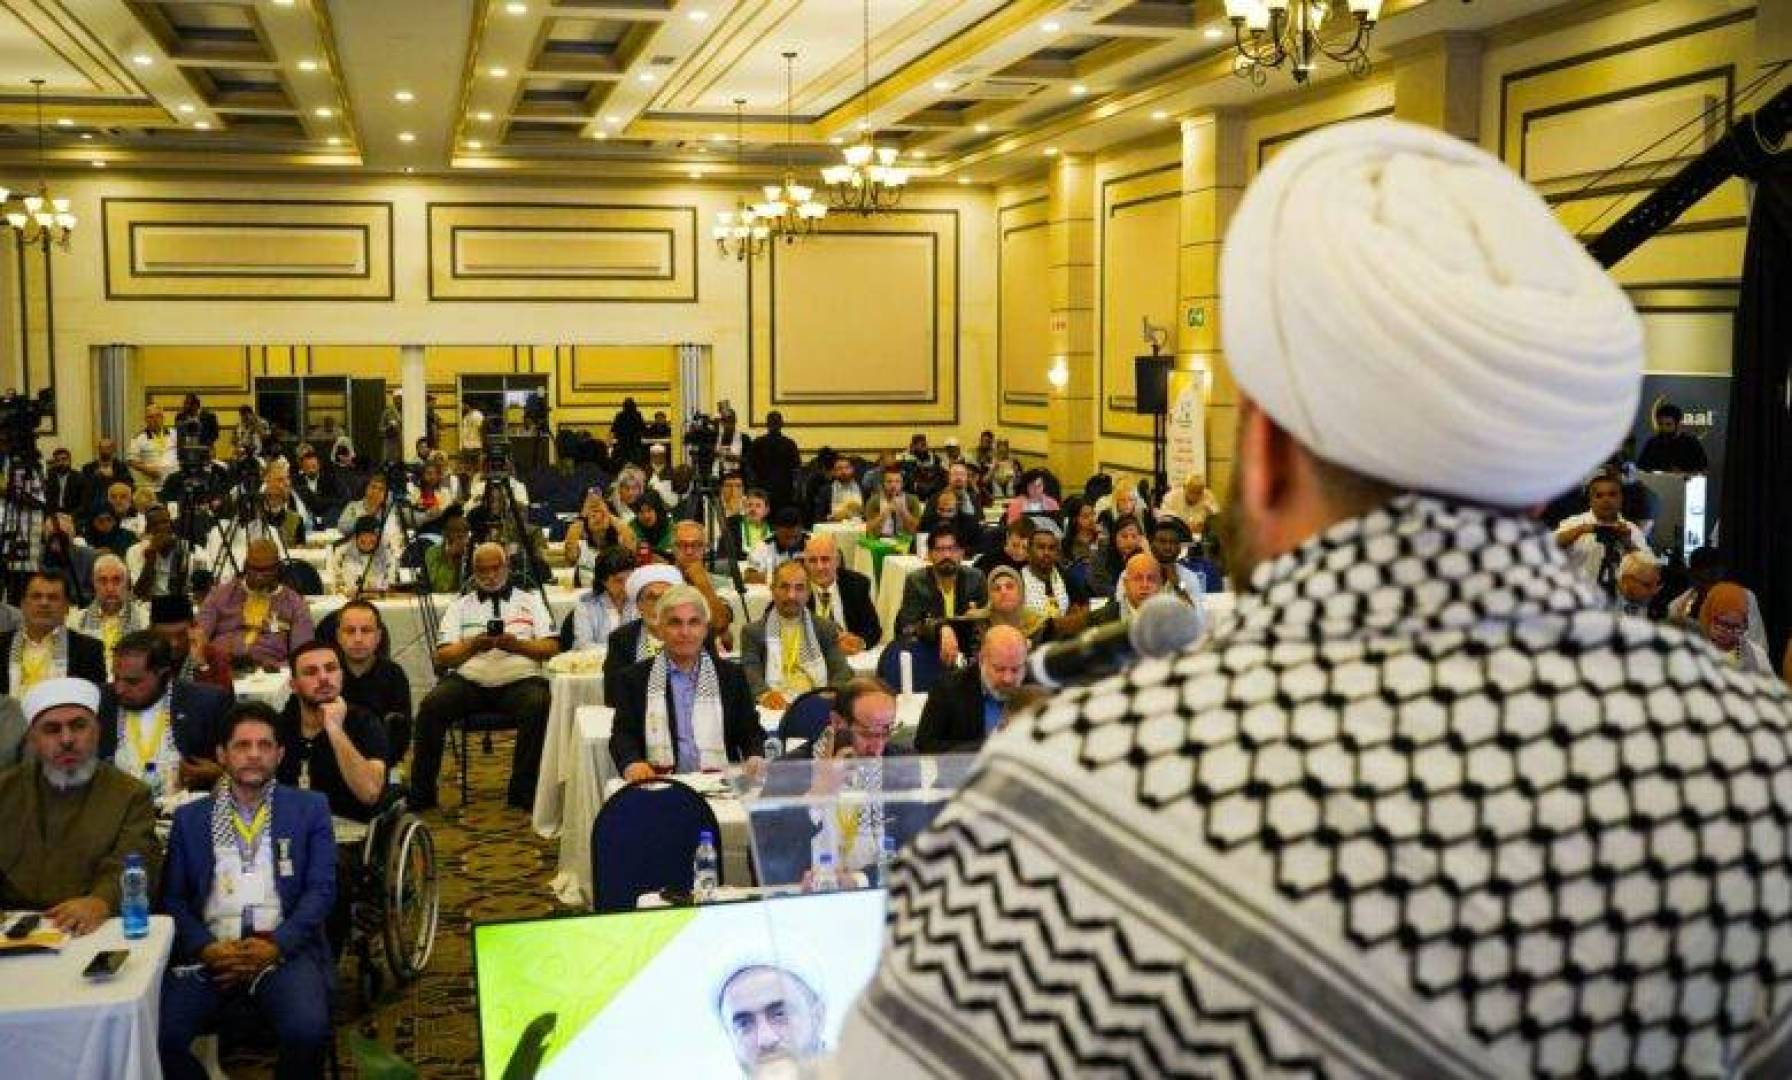 كلمة الشيخ يوسف عباس المنسق العام للحملة العالمية للعودة إلى فلسطين يبارك نجاح الملتقى الدولي الخامس للتضامن مع فلسطين والذي عقد في جنوب إفريقيا.